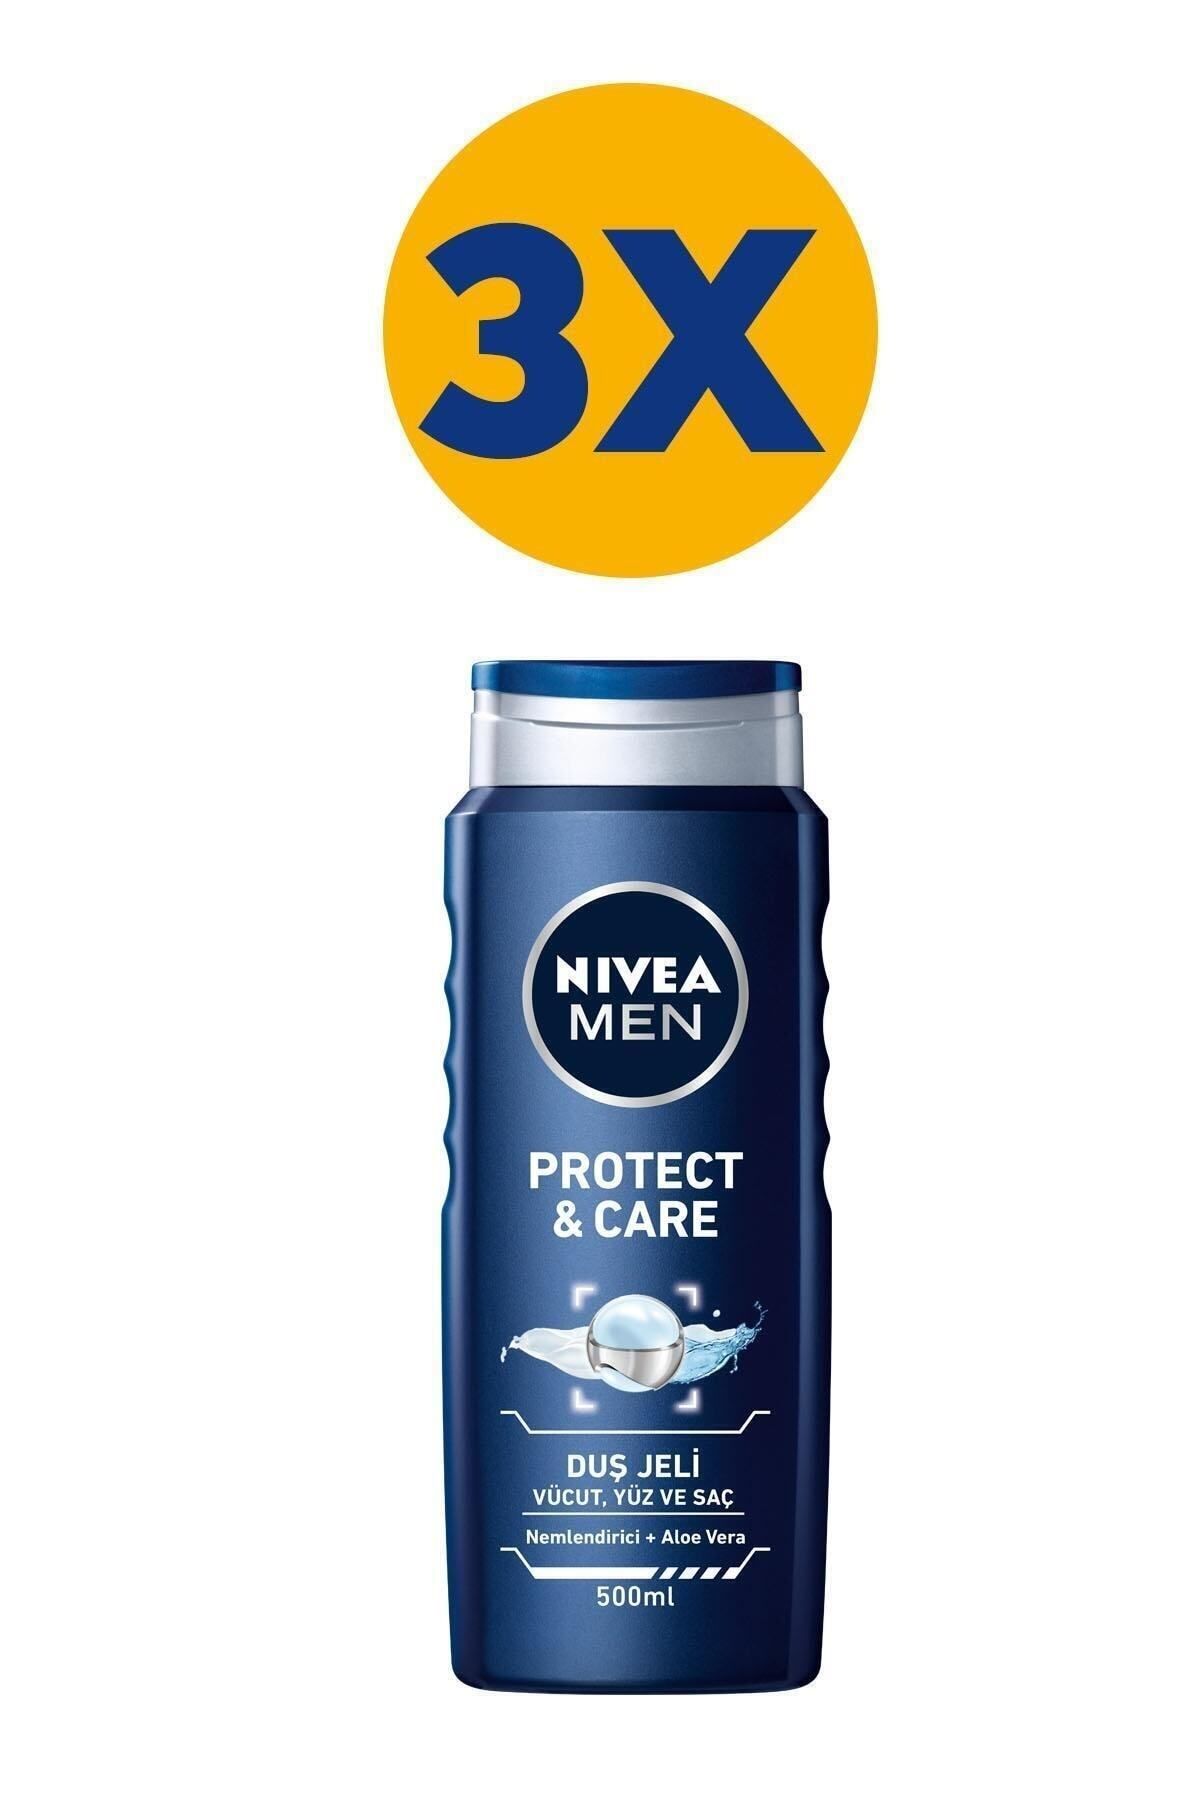 NIVEA MEN Erkek Duş Jeli Protect&care 500 ml,3X, Vücut,Yüz ve Saç, Nemlendirici&Aloe Vera